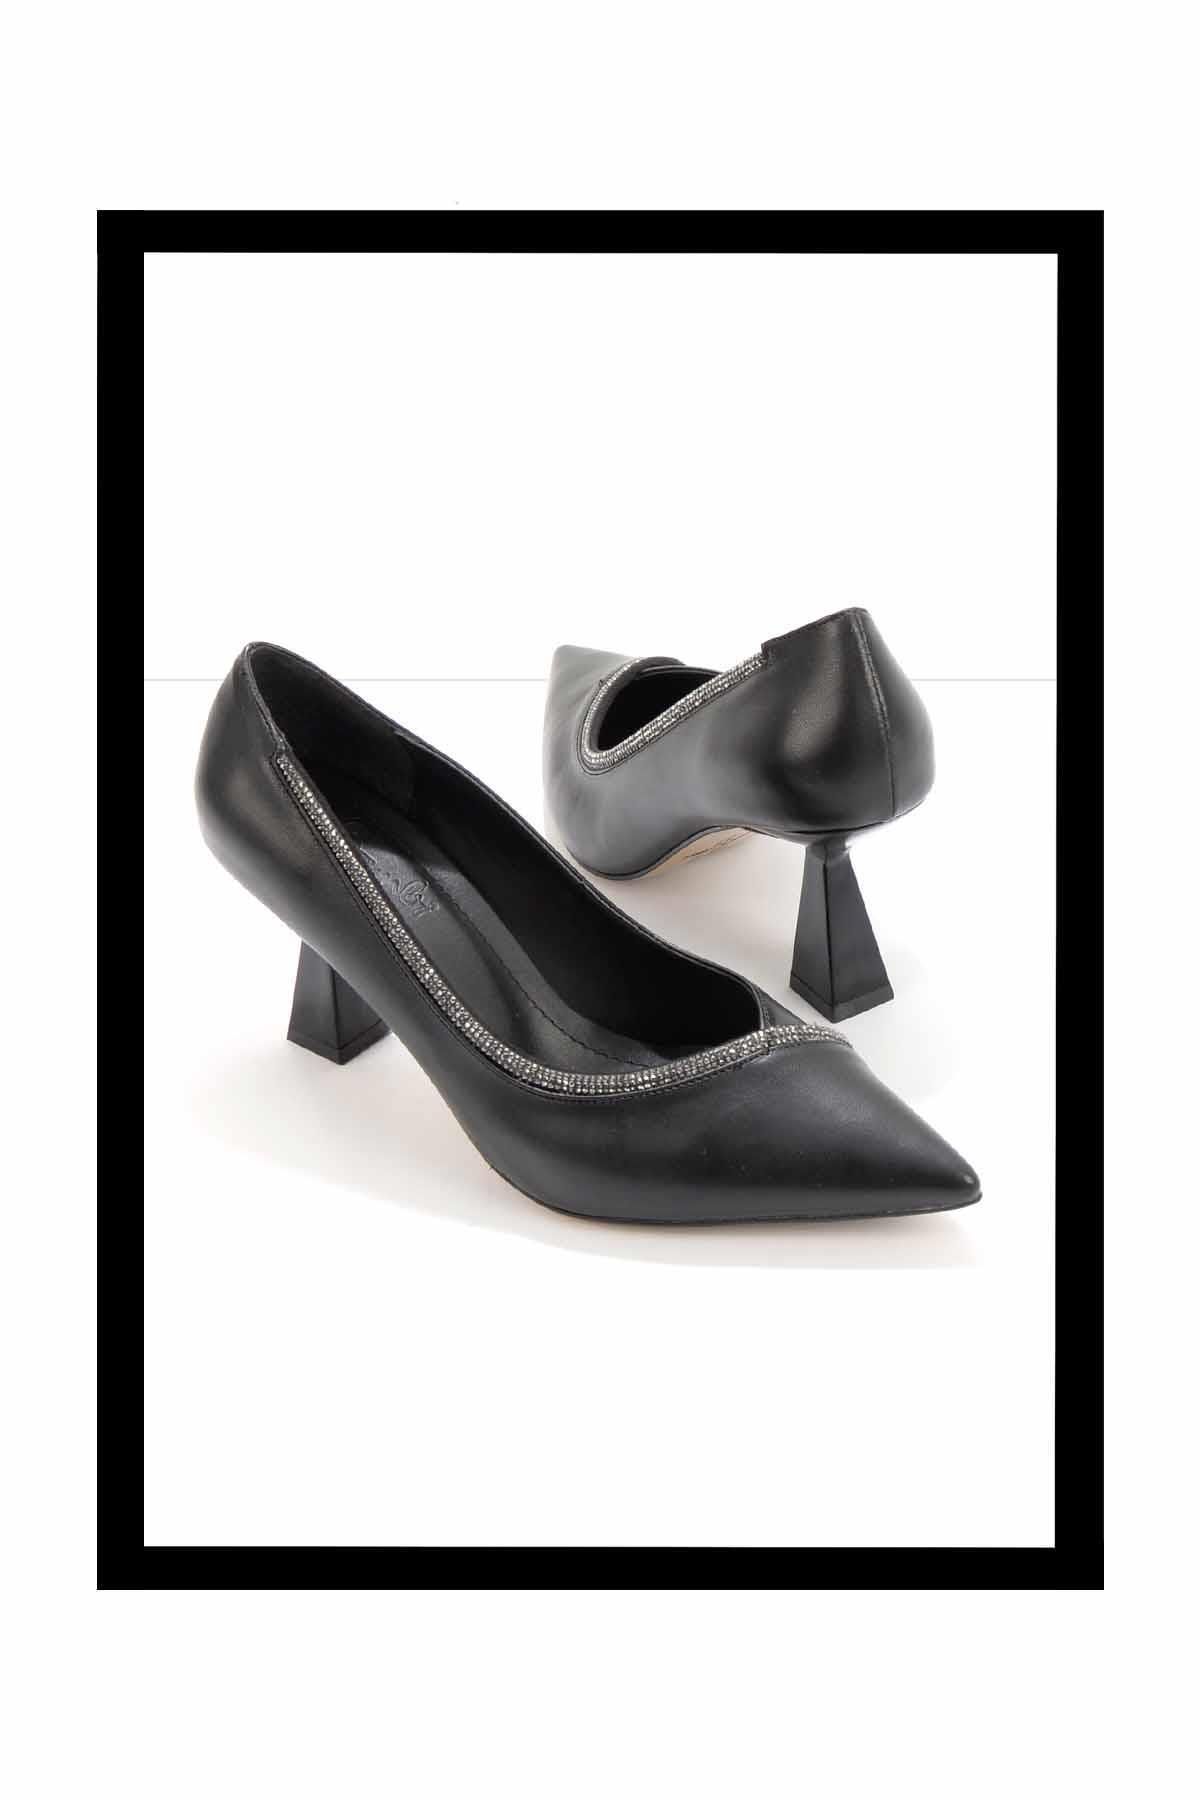 Bambi Siyah Platin Taşlı Kadın Klasik Topuklu Ayakkabı K01231341309